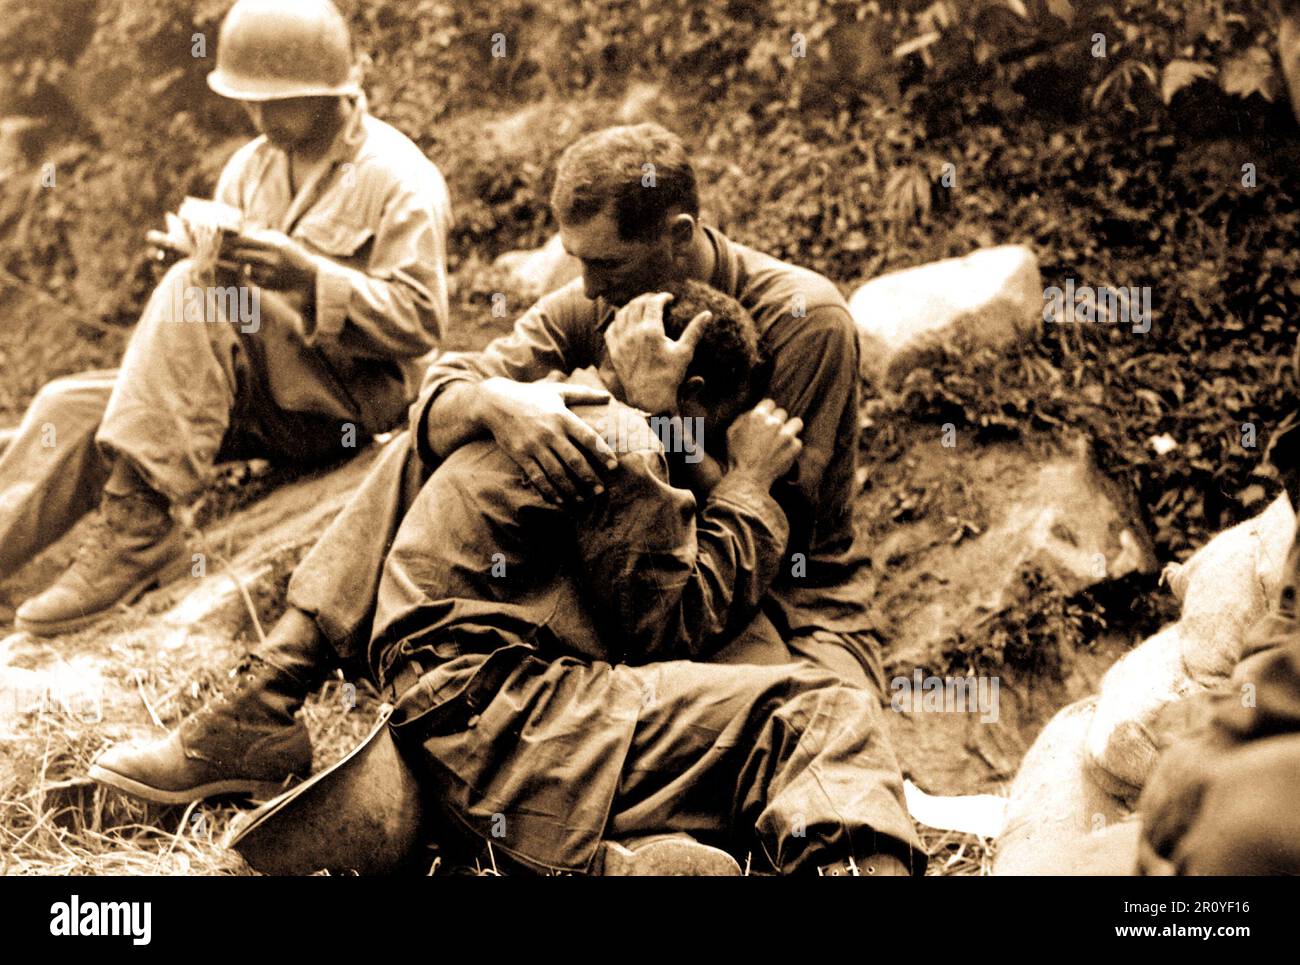 Un fantassin de l'Amérique frappée par le deuil dont buddy a été tué en action est réconforté par un autre soldat. Dans l'arrière-plan un remplit méthodiquement corpsman casualty tags, Haktong-ni, Corée. Le 28 août 1950. Photo par SFC. Al Chang. (Armée) Banque D'Images